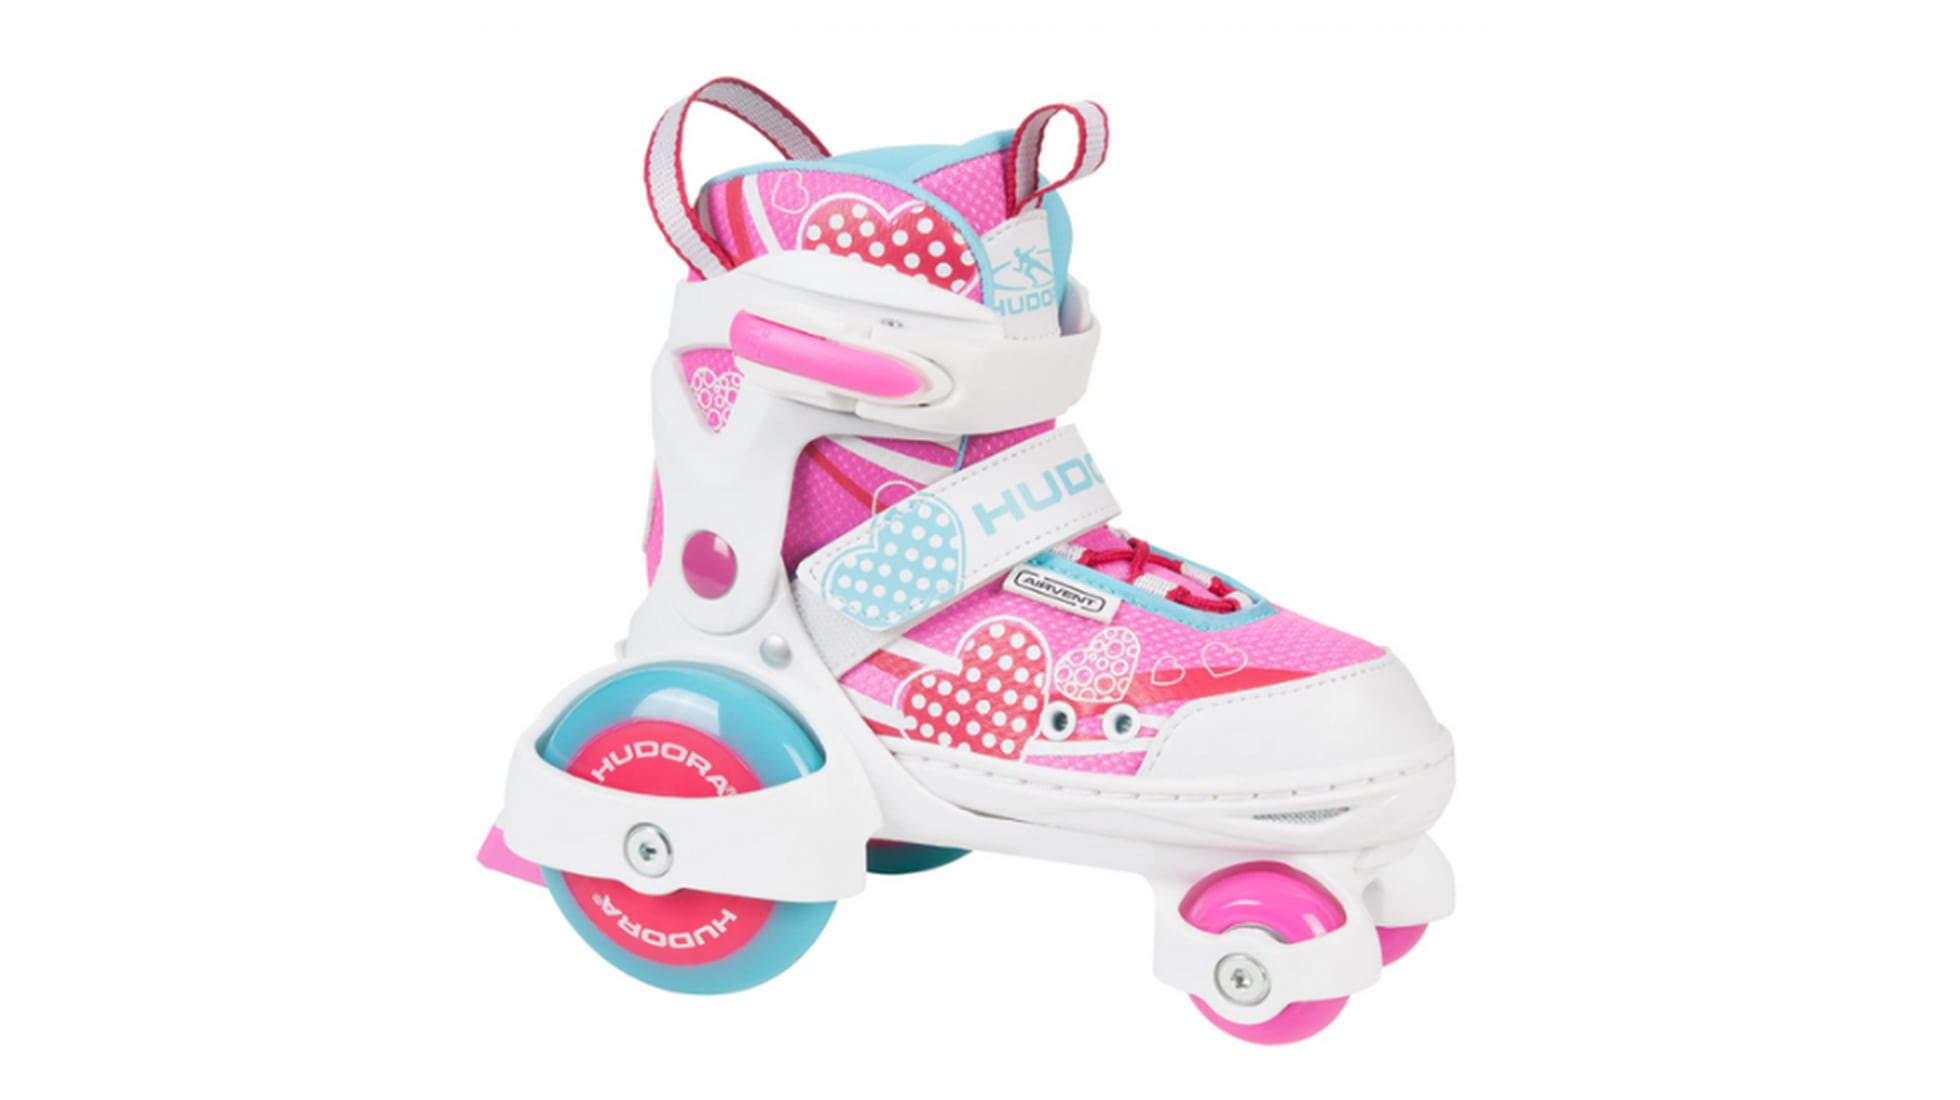 Patines de cuatro ruedas para niñas y mujeres,de talla 2.5 para niñas hasta  8.5 para mujeres; para interiores, exteriores y patinaje en pista. Calzado